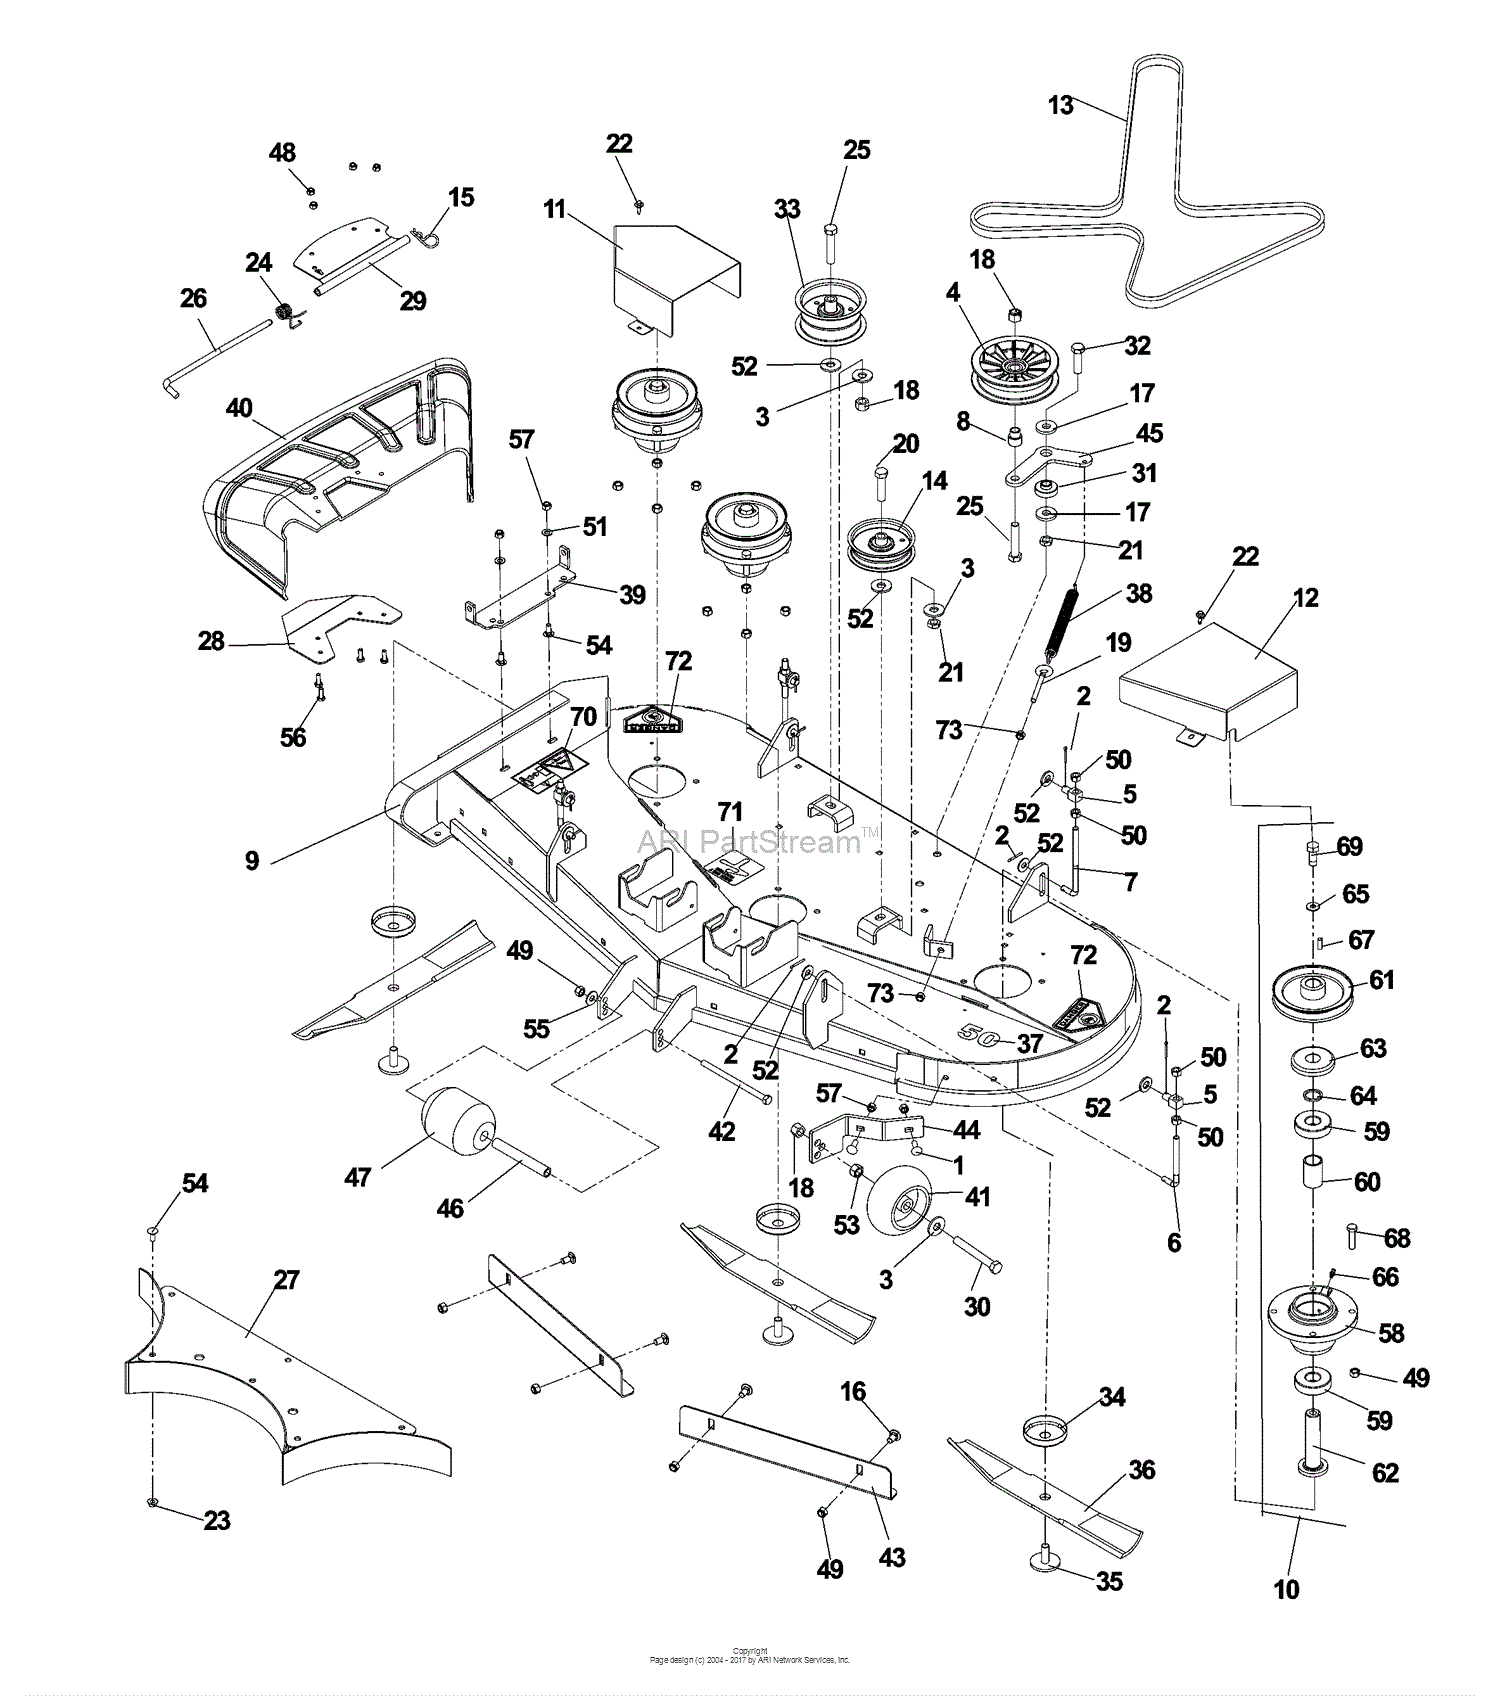 Dixon RAM MAG 50 20 KOHLER - 968999563 (2007) Parts ... dixon ram 50 belt diagram 